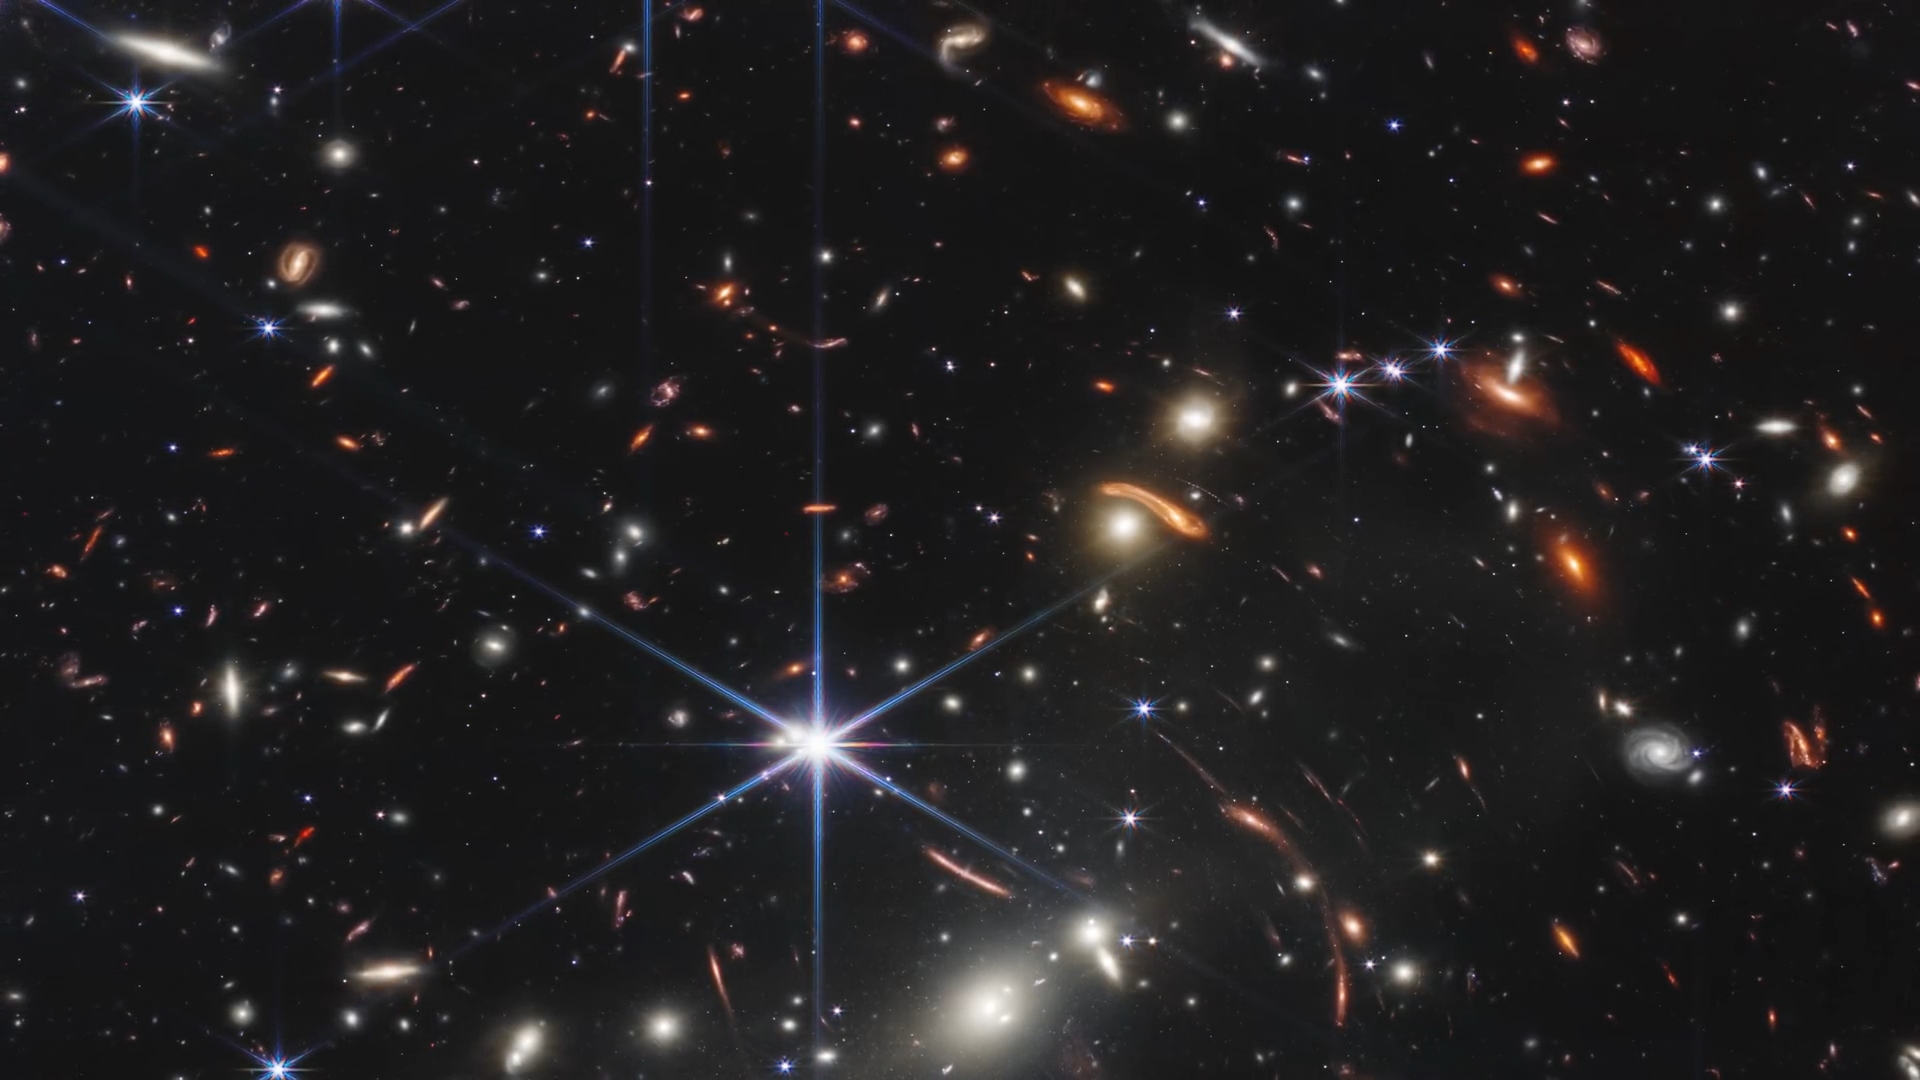 韦布望远镜所拍摄的深层次宇宙图像